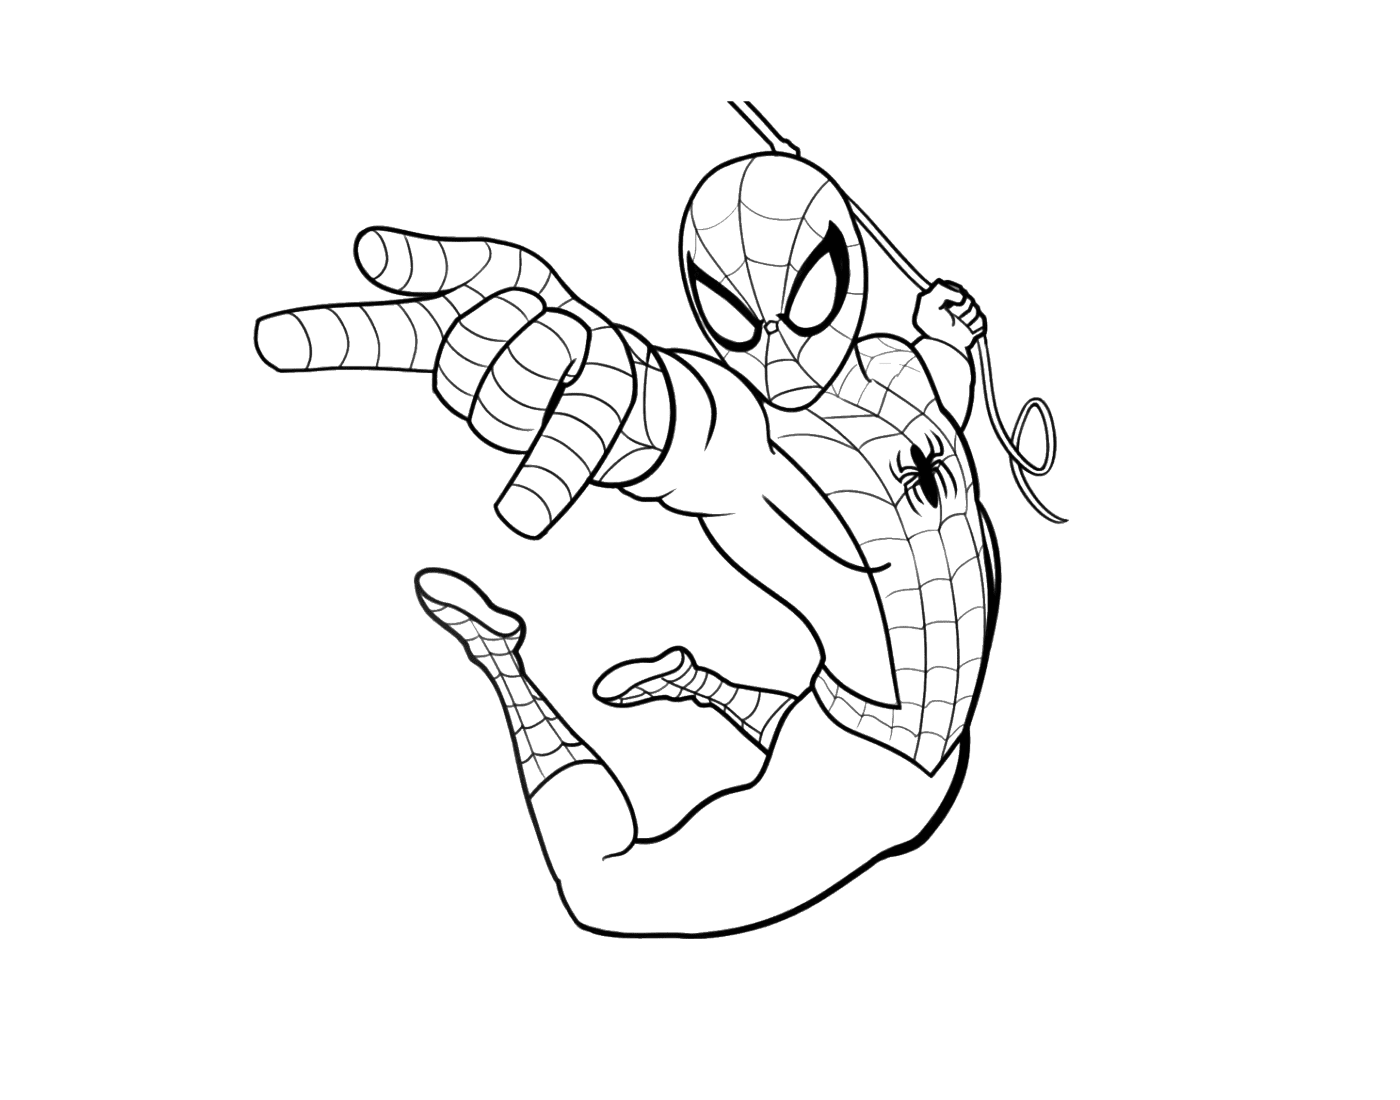  Spider-Man saltando en el aire 